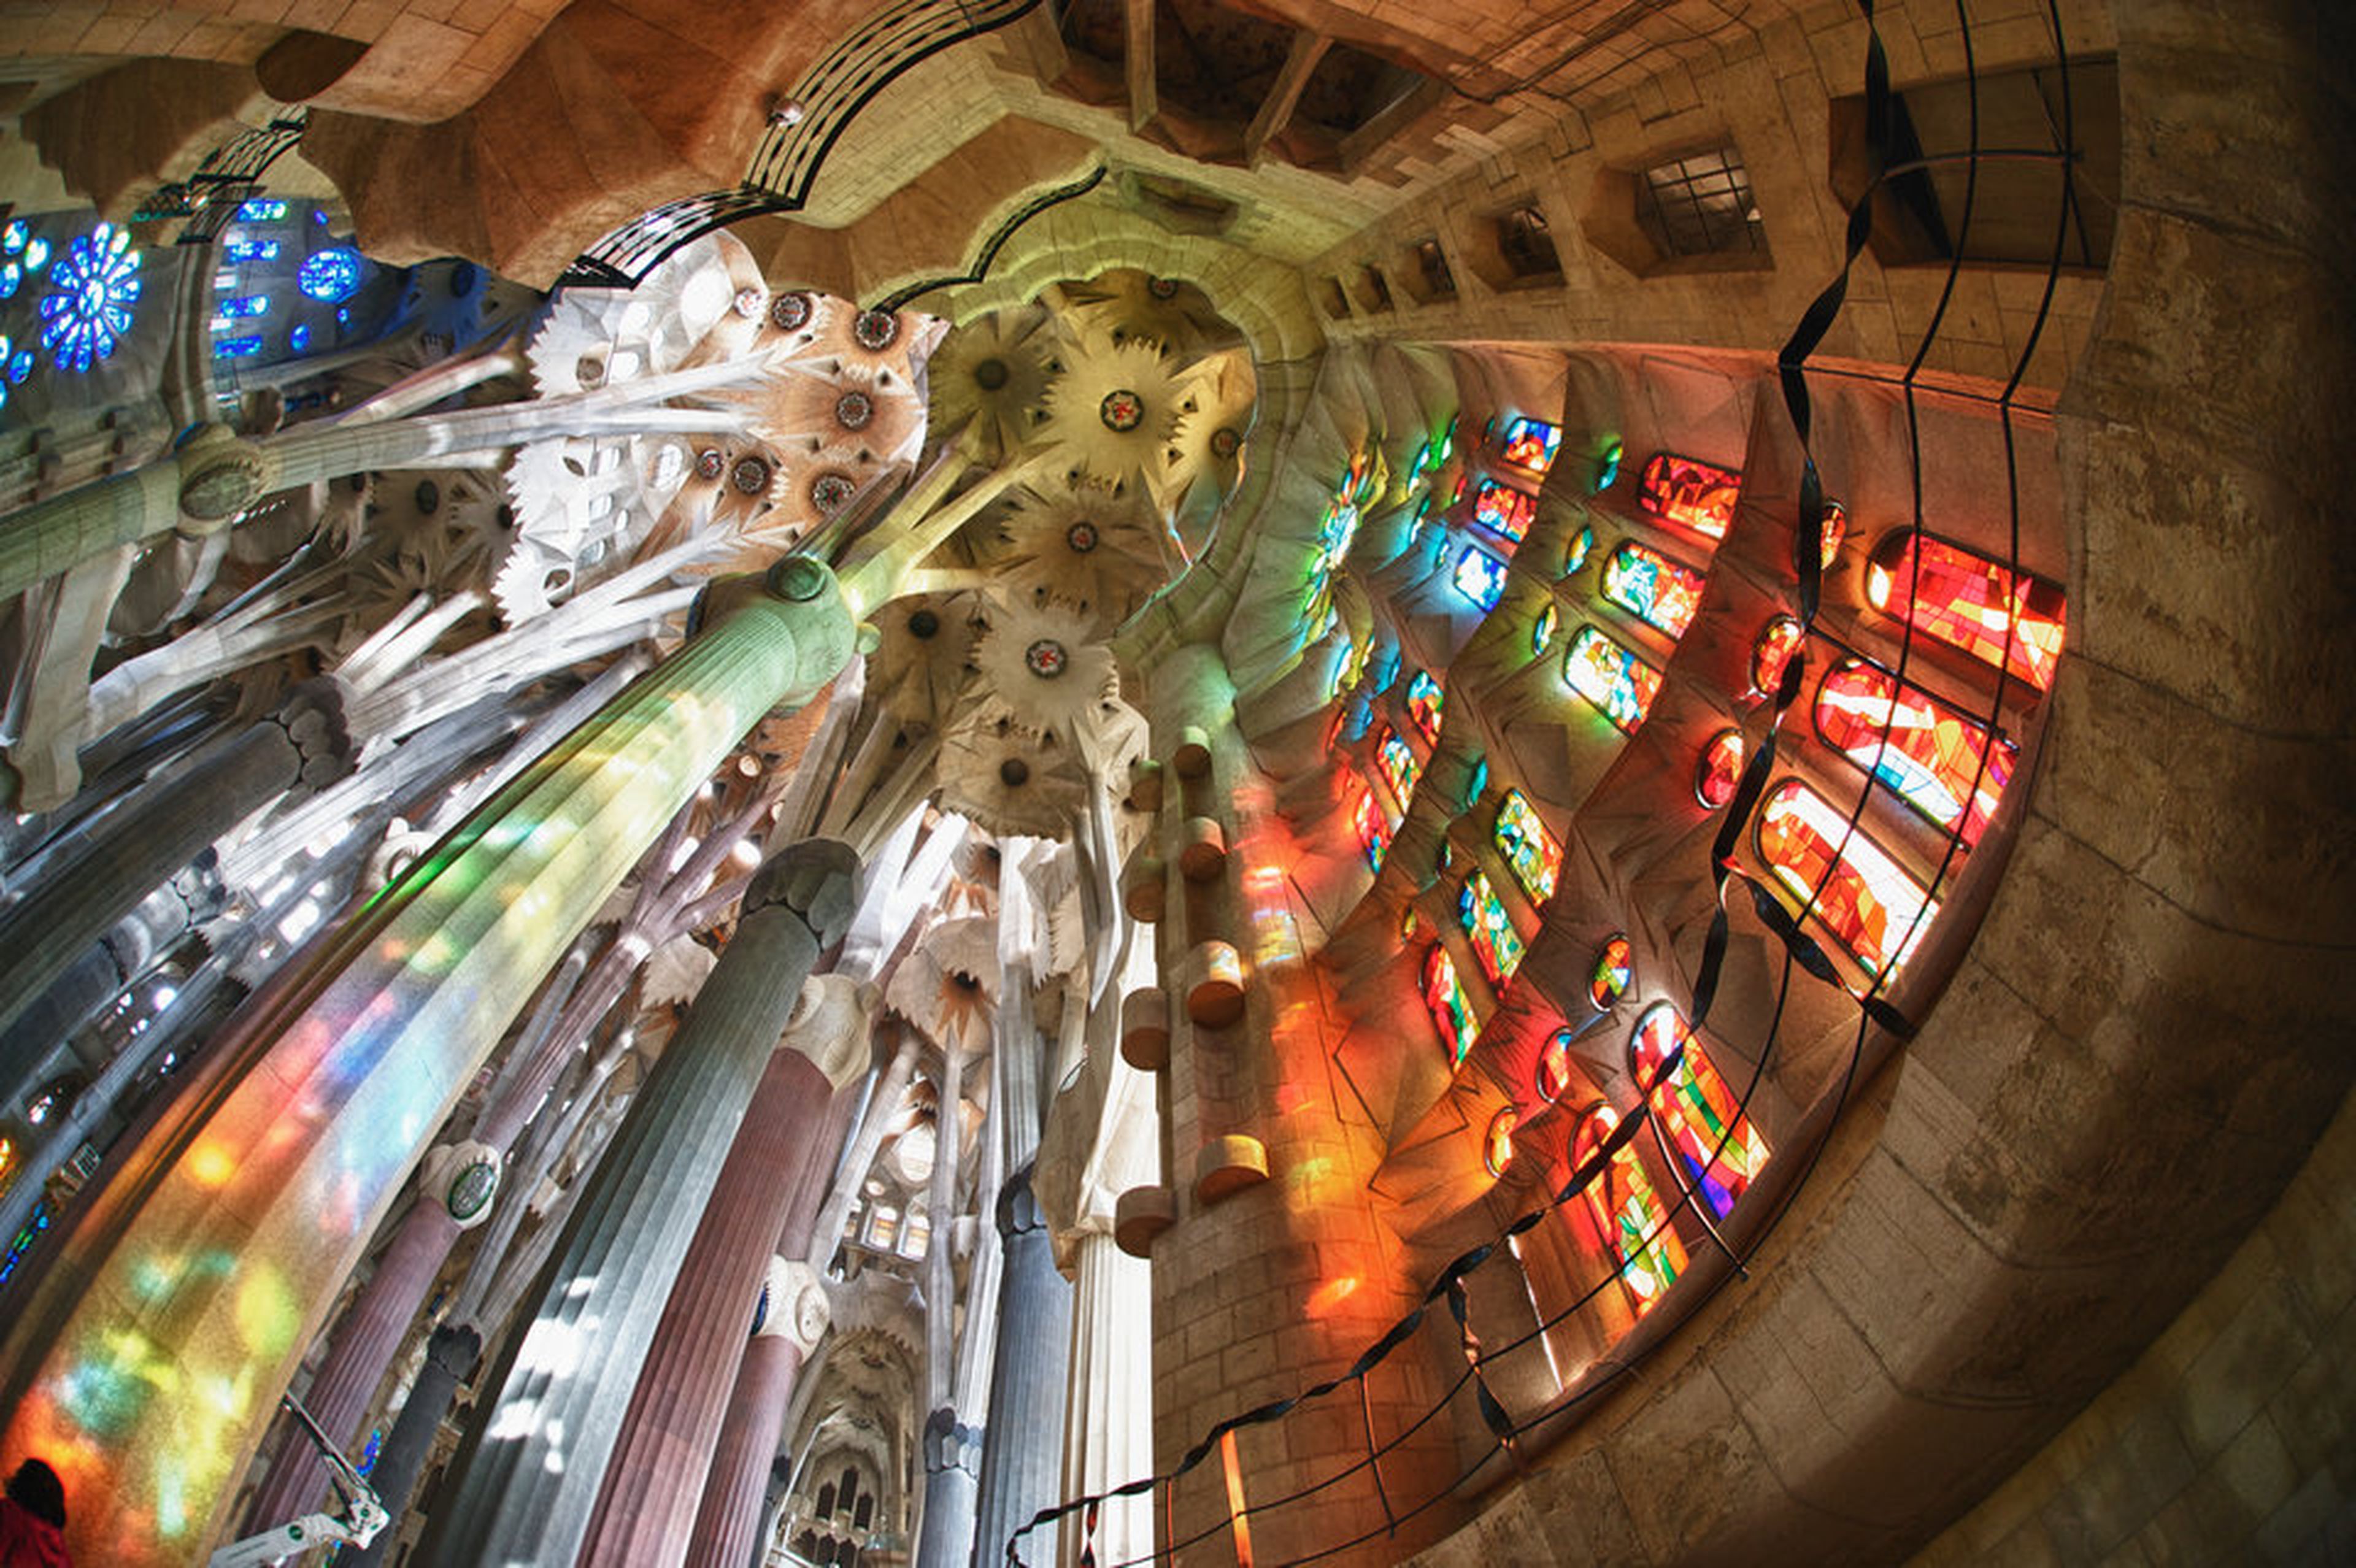 Interior de la Sagrada Familia en Barcelona